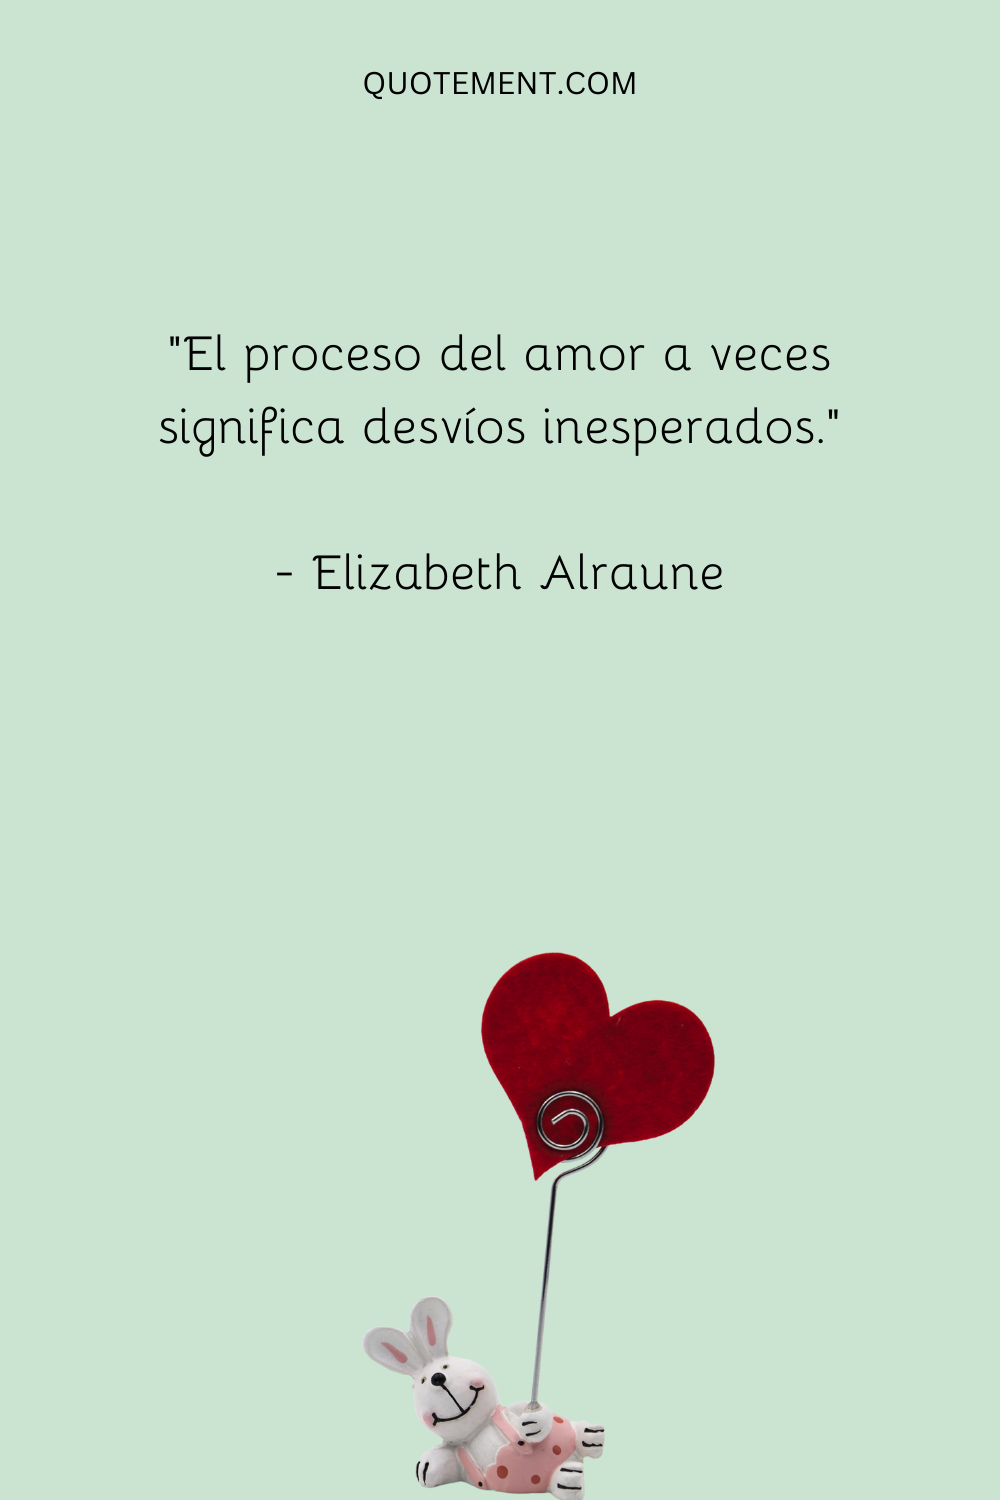 "El proceso del amor a veces implica desvíos inesperados". - Elizabeth Alraune